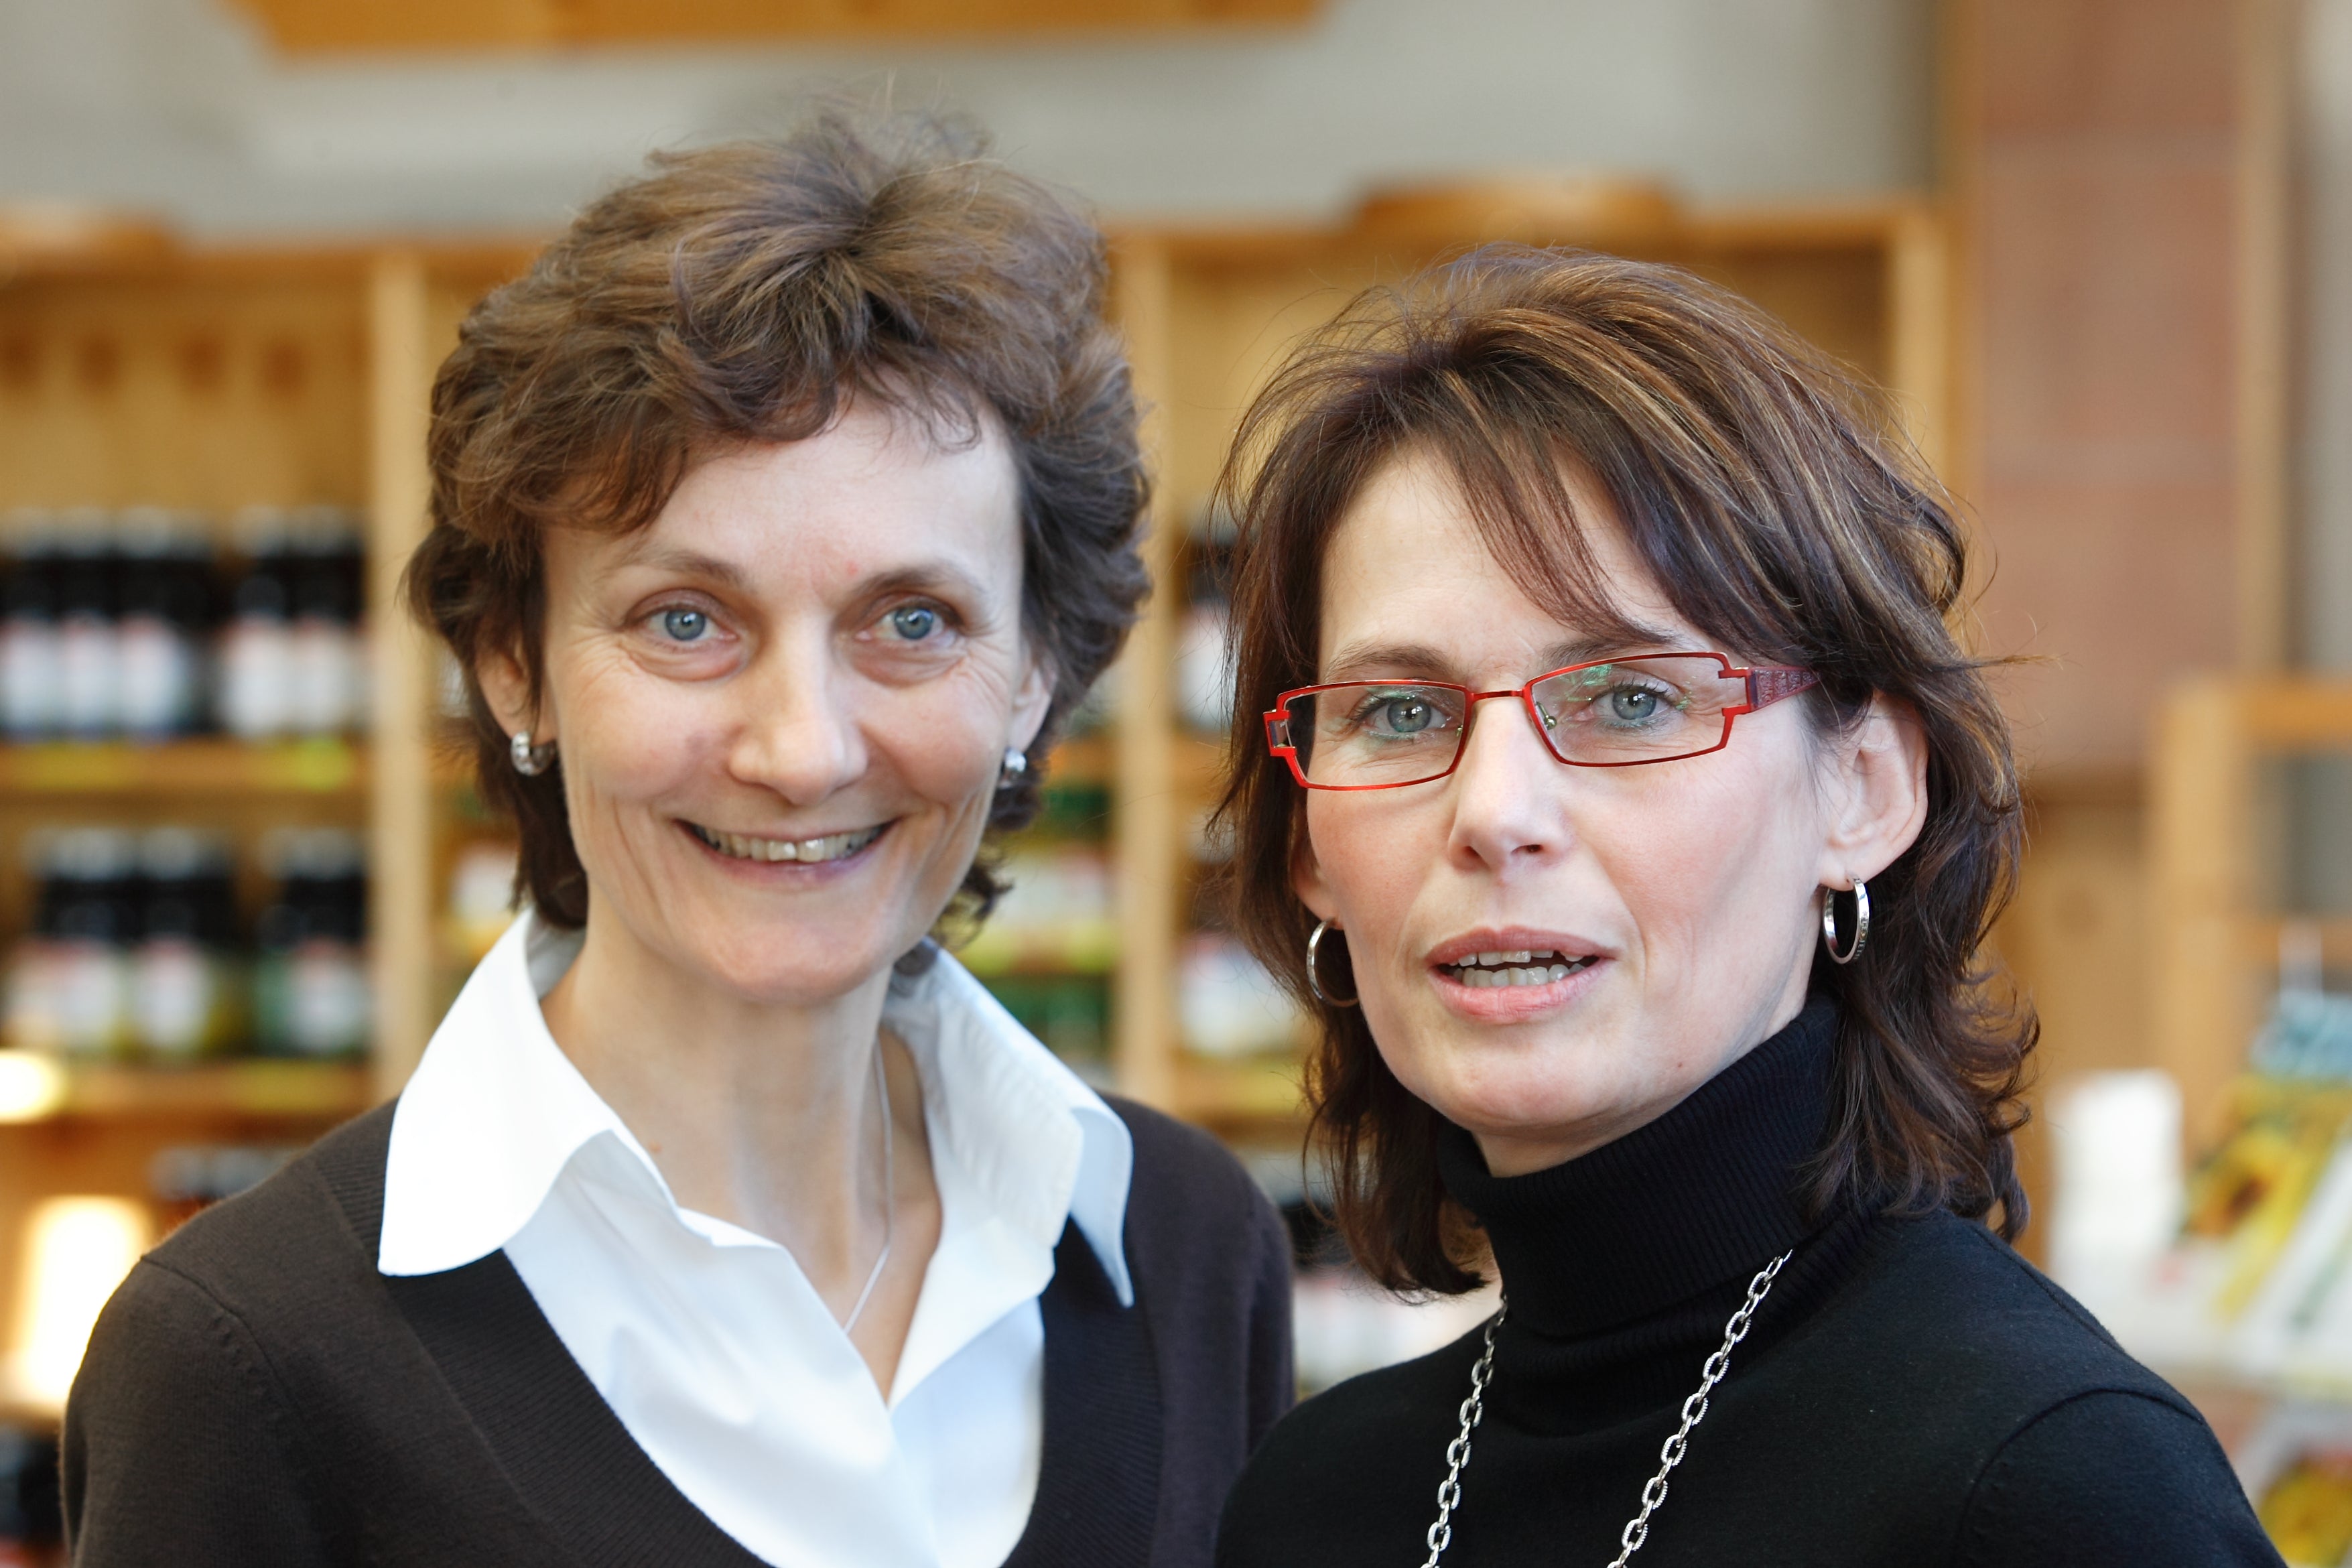 Karin Lamparter und Heike Spohn stehen lächelnd nebeneinander.